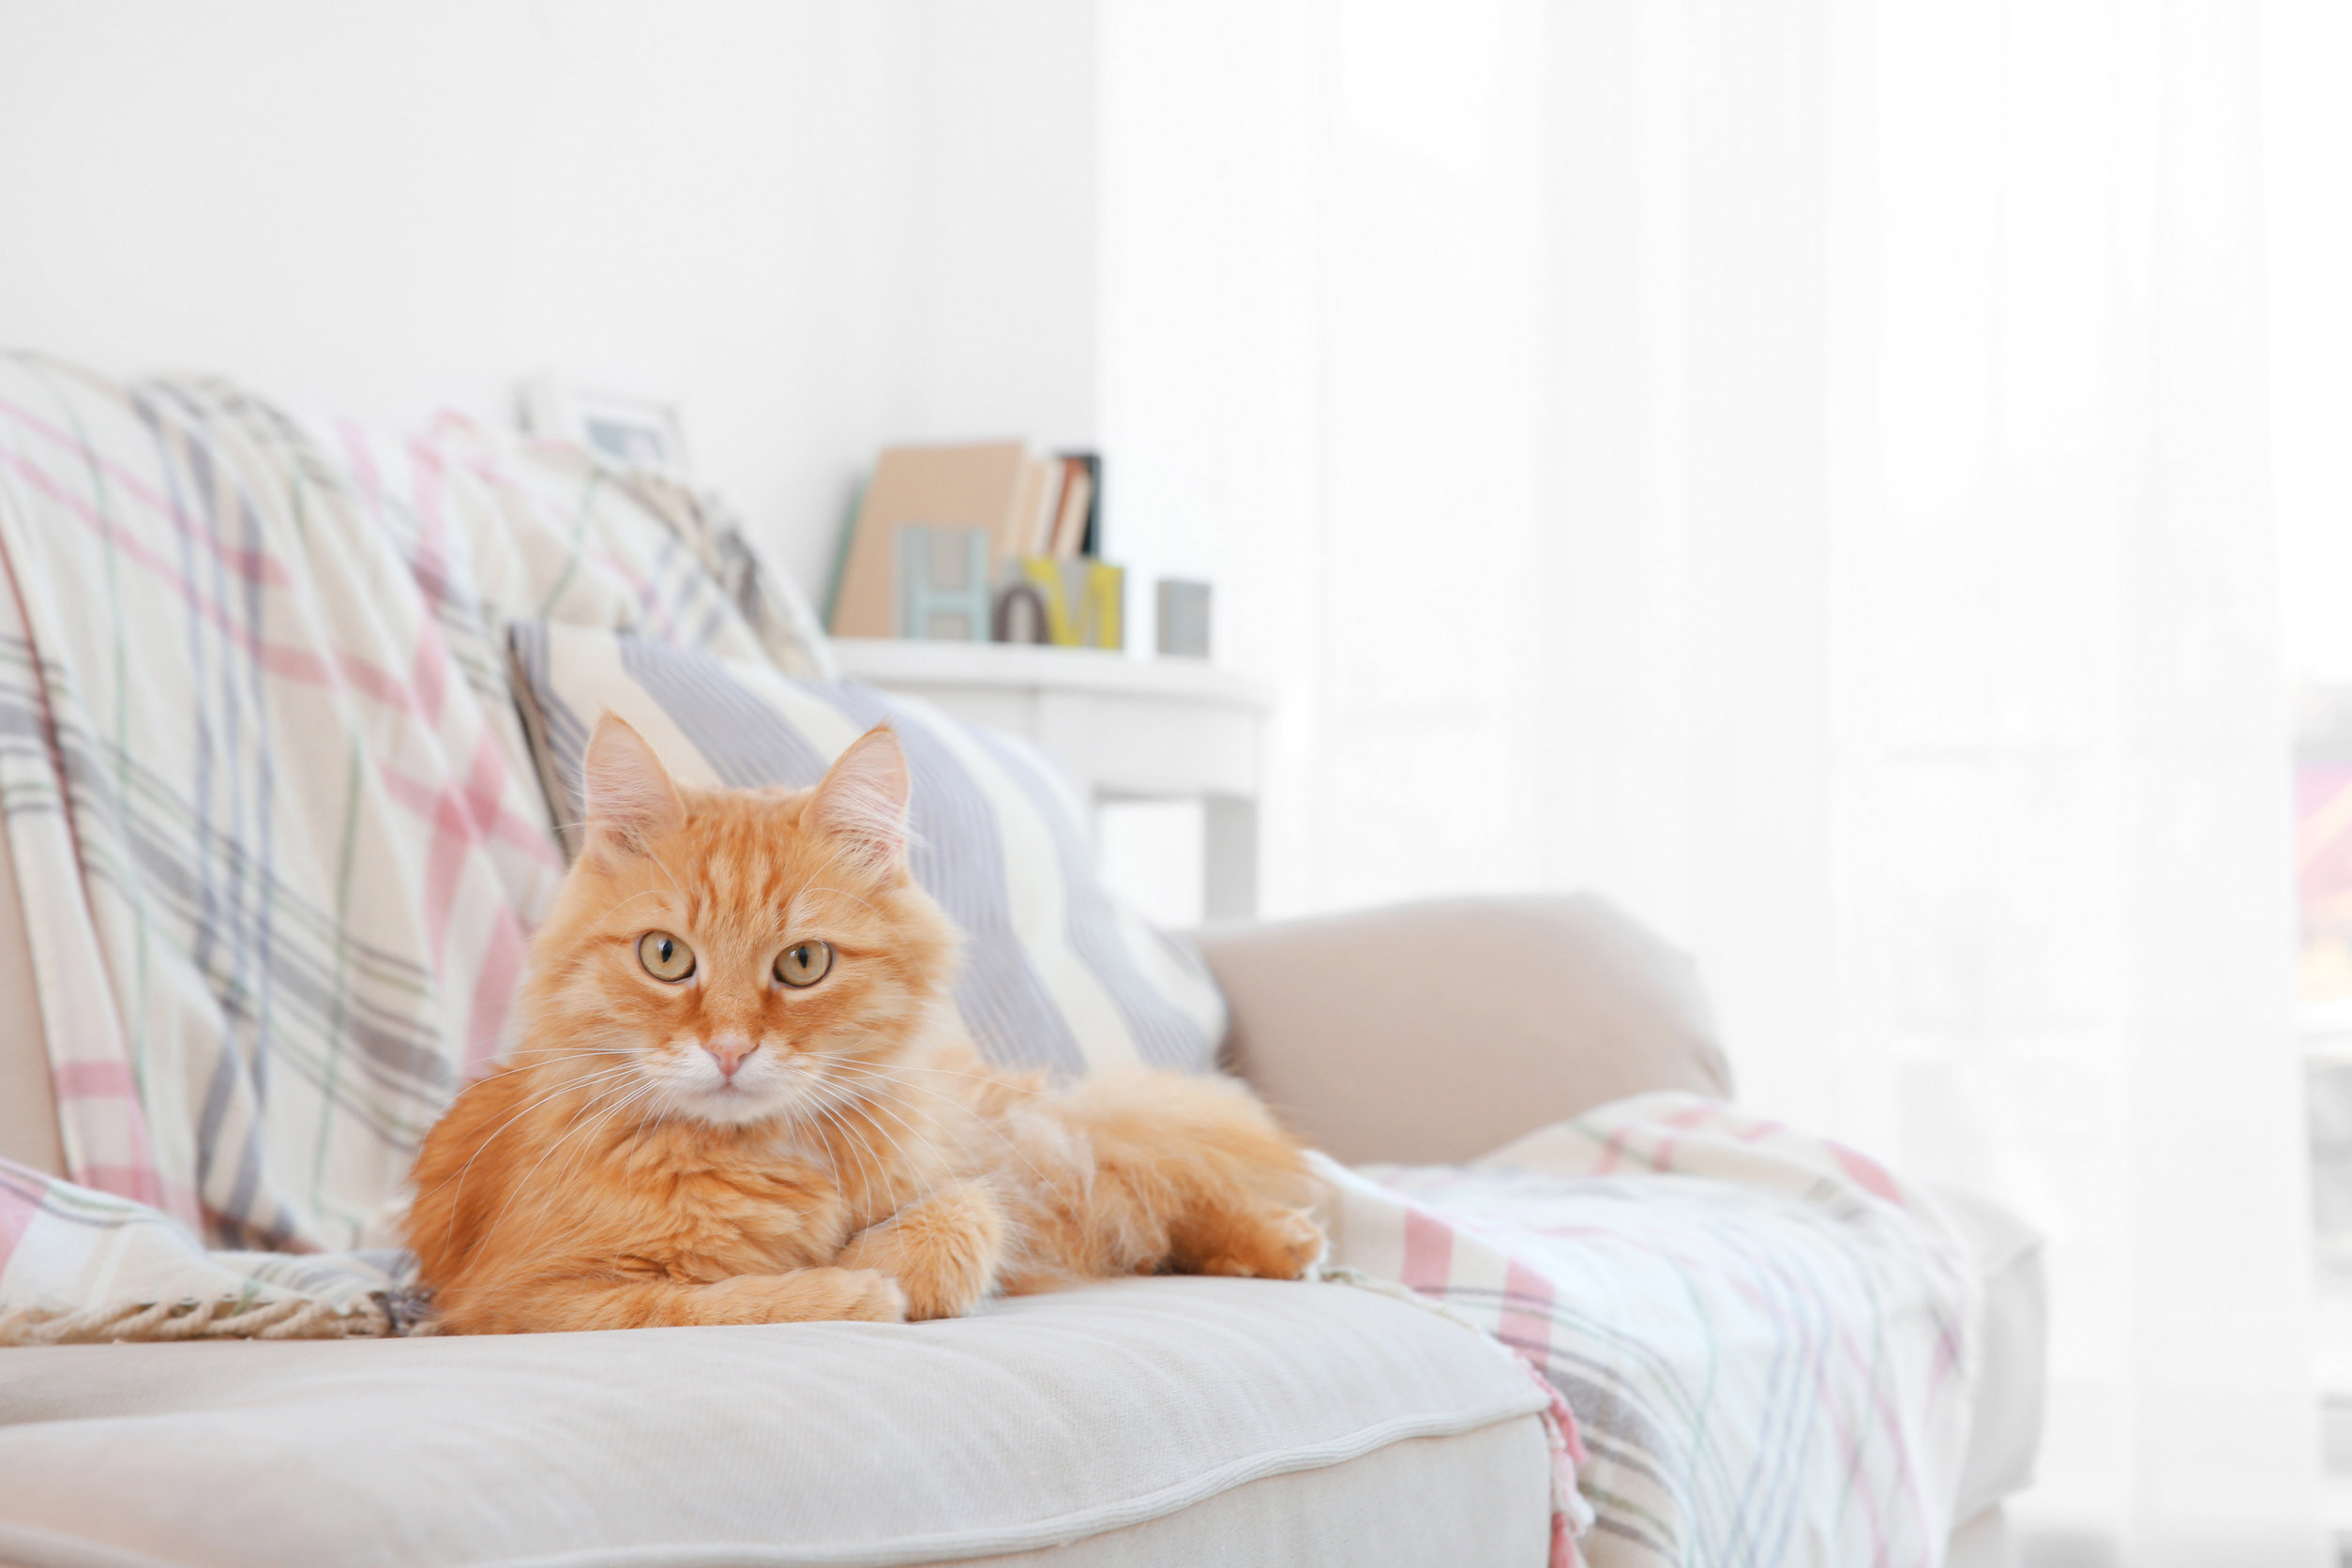 Comment éliminer l'odeur de chat chez moi ? - Trucs et astuces - Chat -  Santévet